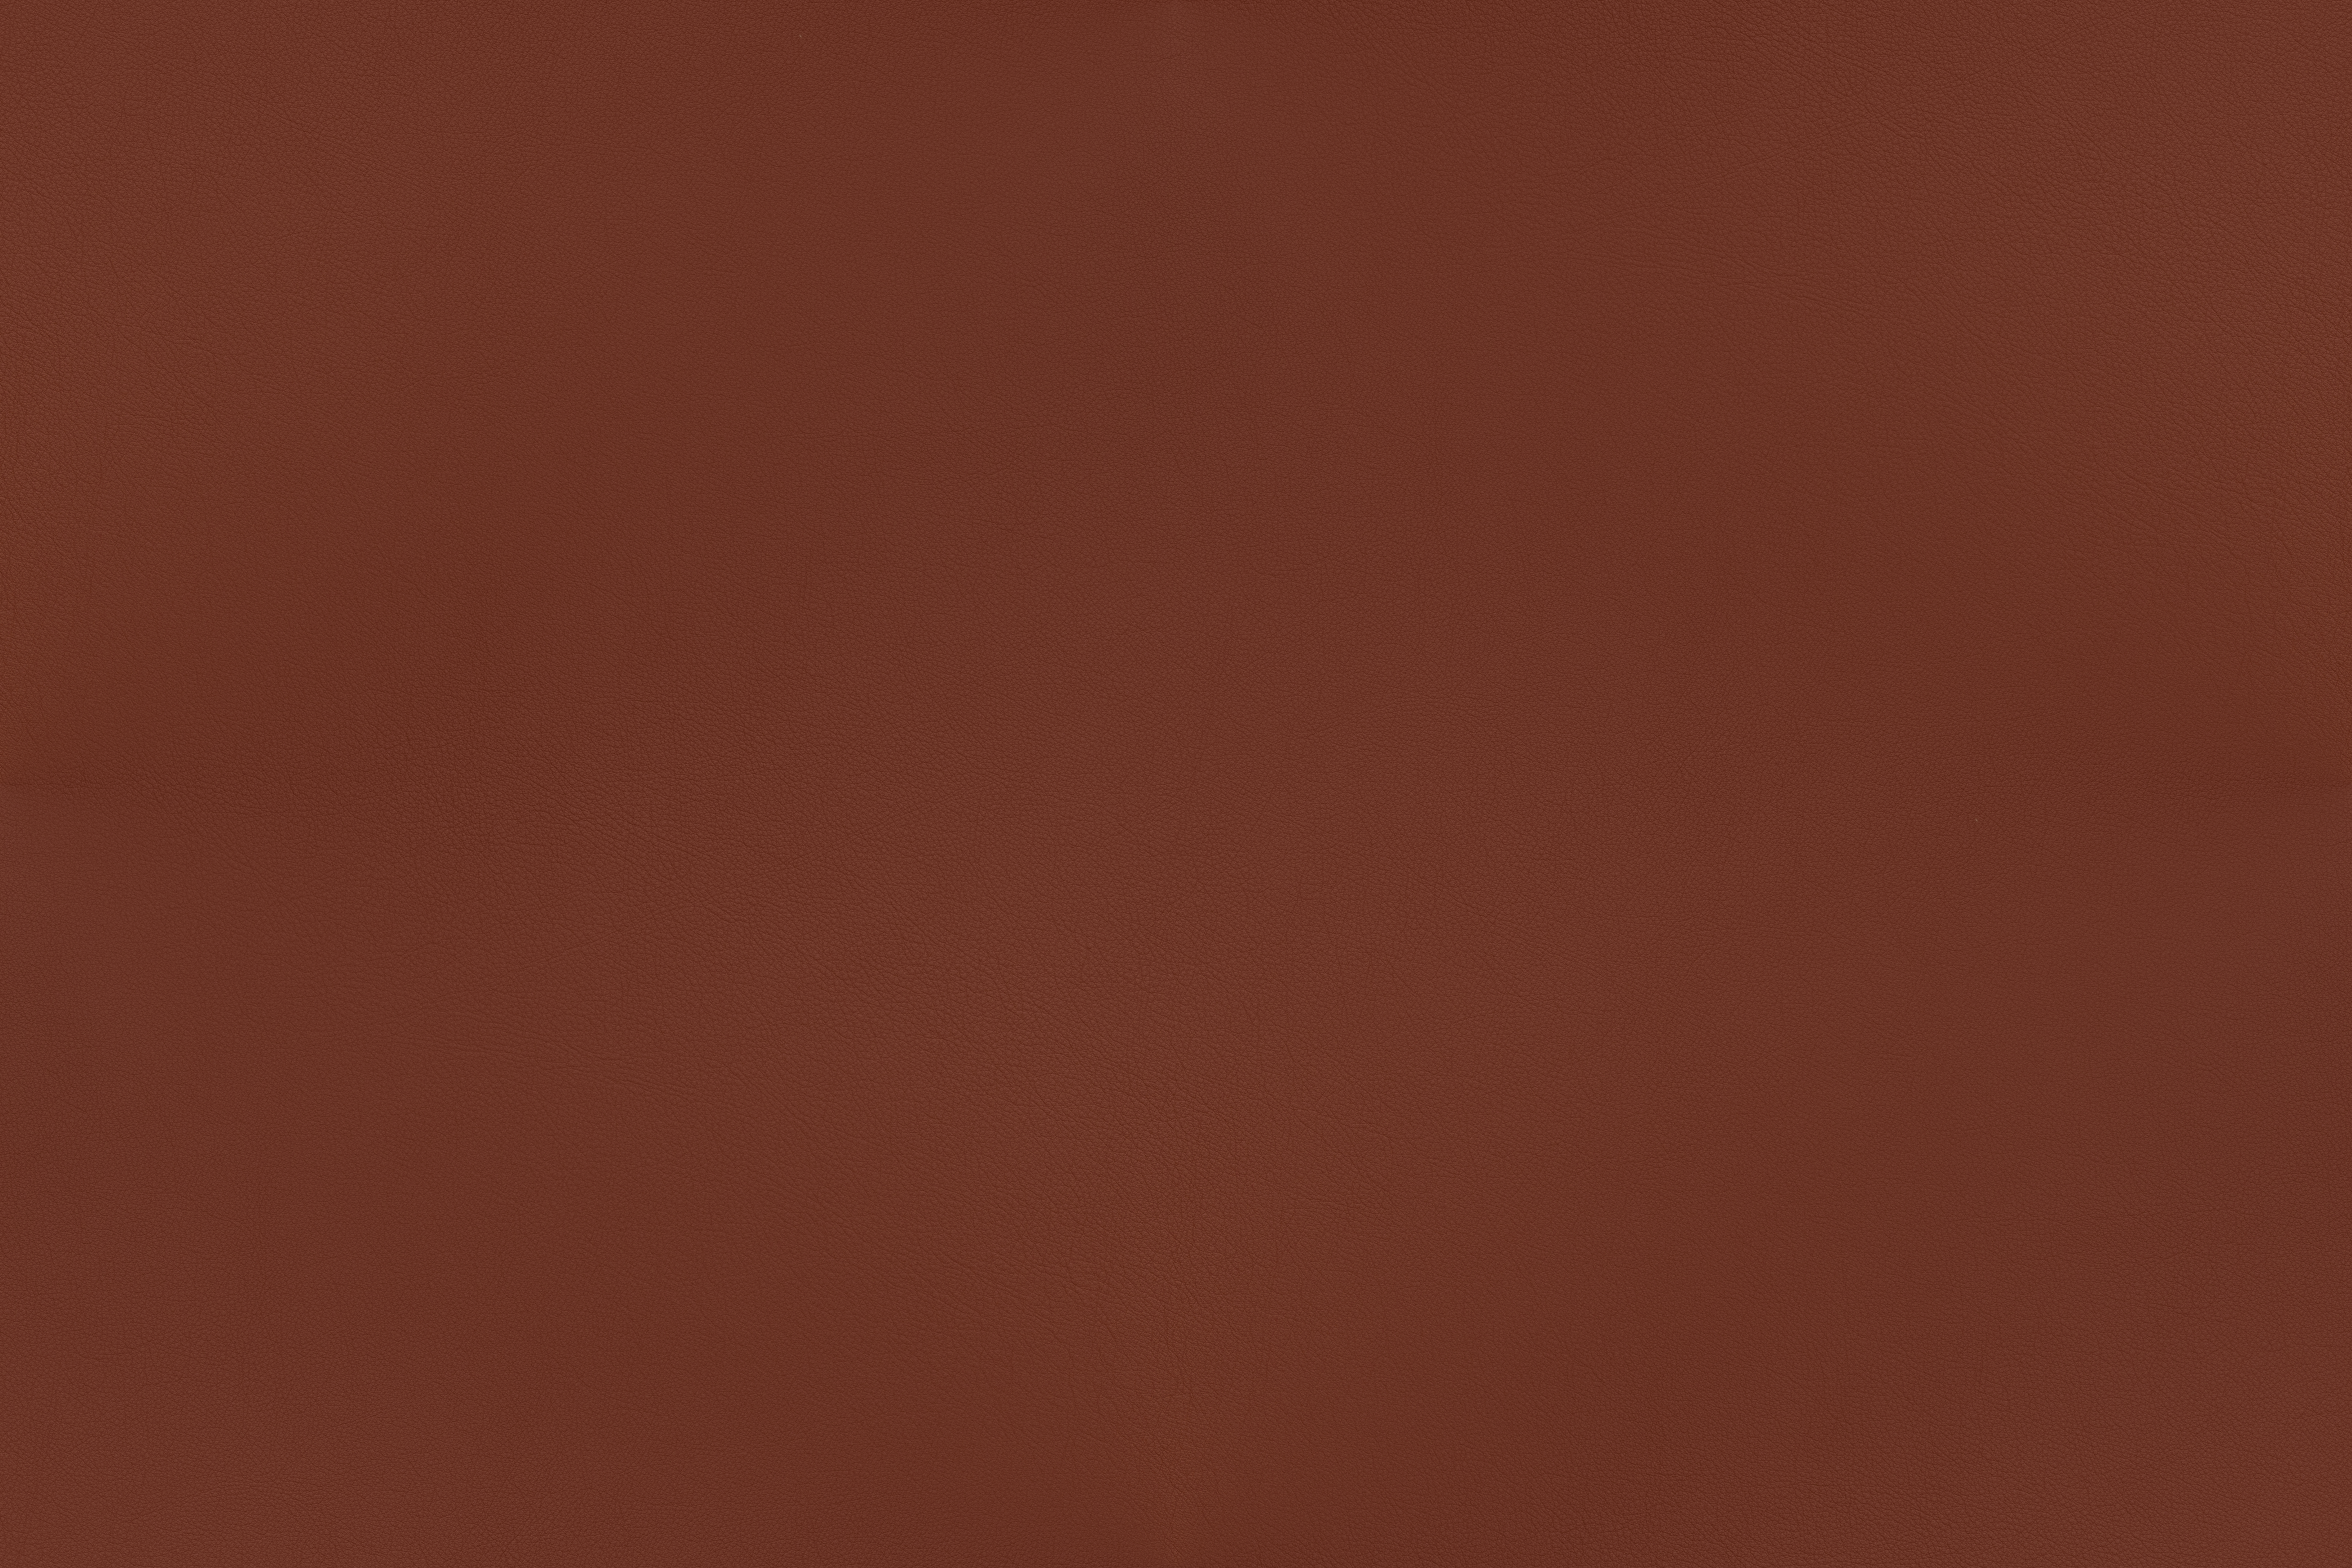 Sorensen Leather - Savanne-dark red-30318 by SorensenLeather on ...